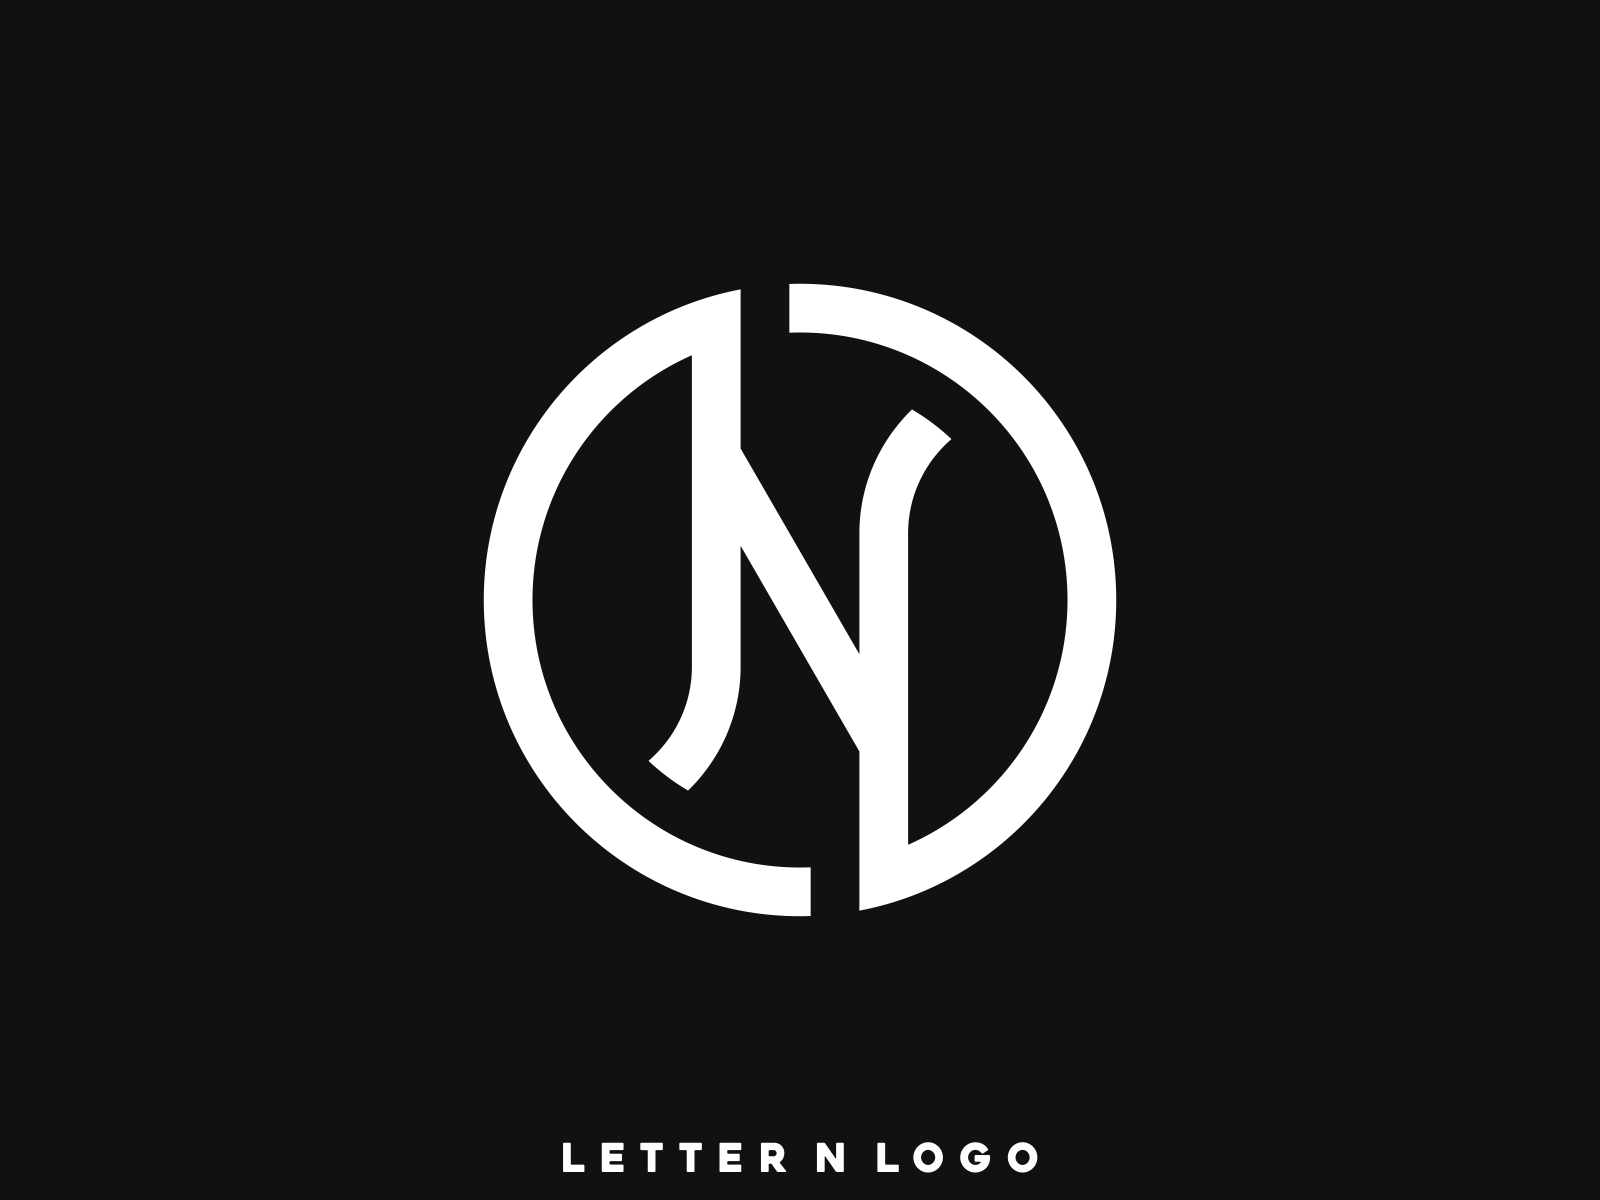 Letter N Logo Design by jobendesign on Dribbble